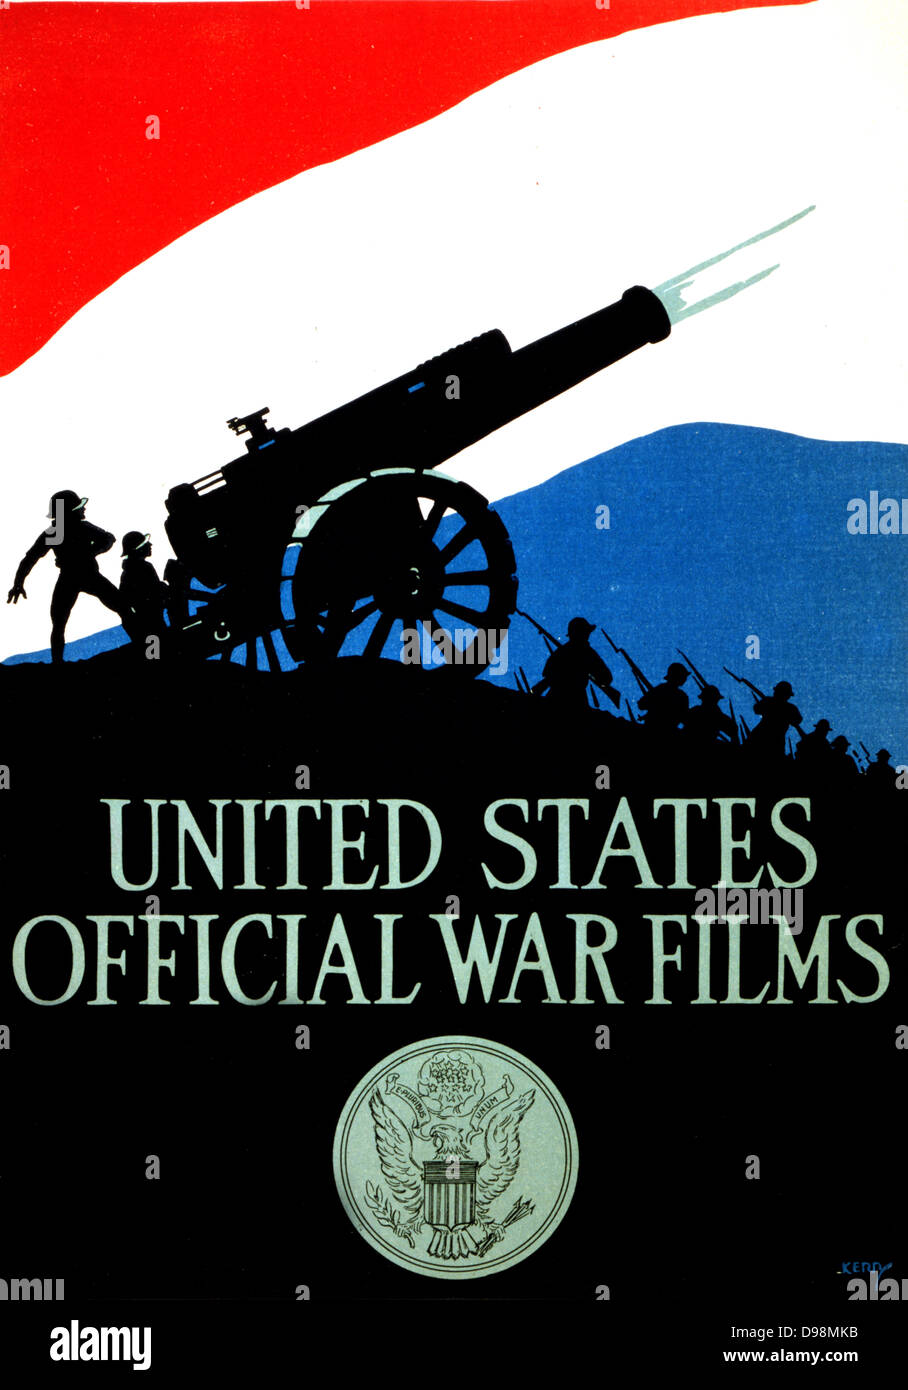 United States offizielle Krieg Filme [1917] Poster mit Silhouette von Soldaten und feuern Kanone gegen einen roten, weißen und blauen Himmel, mit United Dichtung unter Staaten. Der erste Weltkrieg Stockfoto